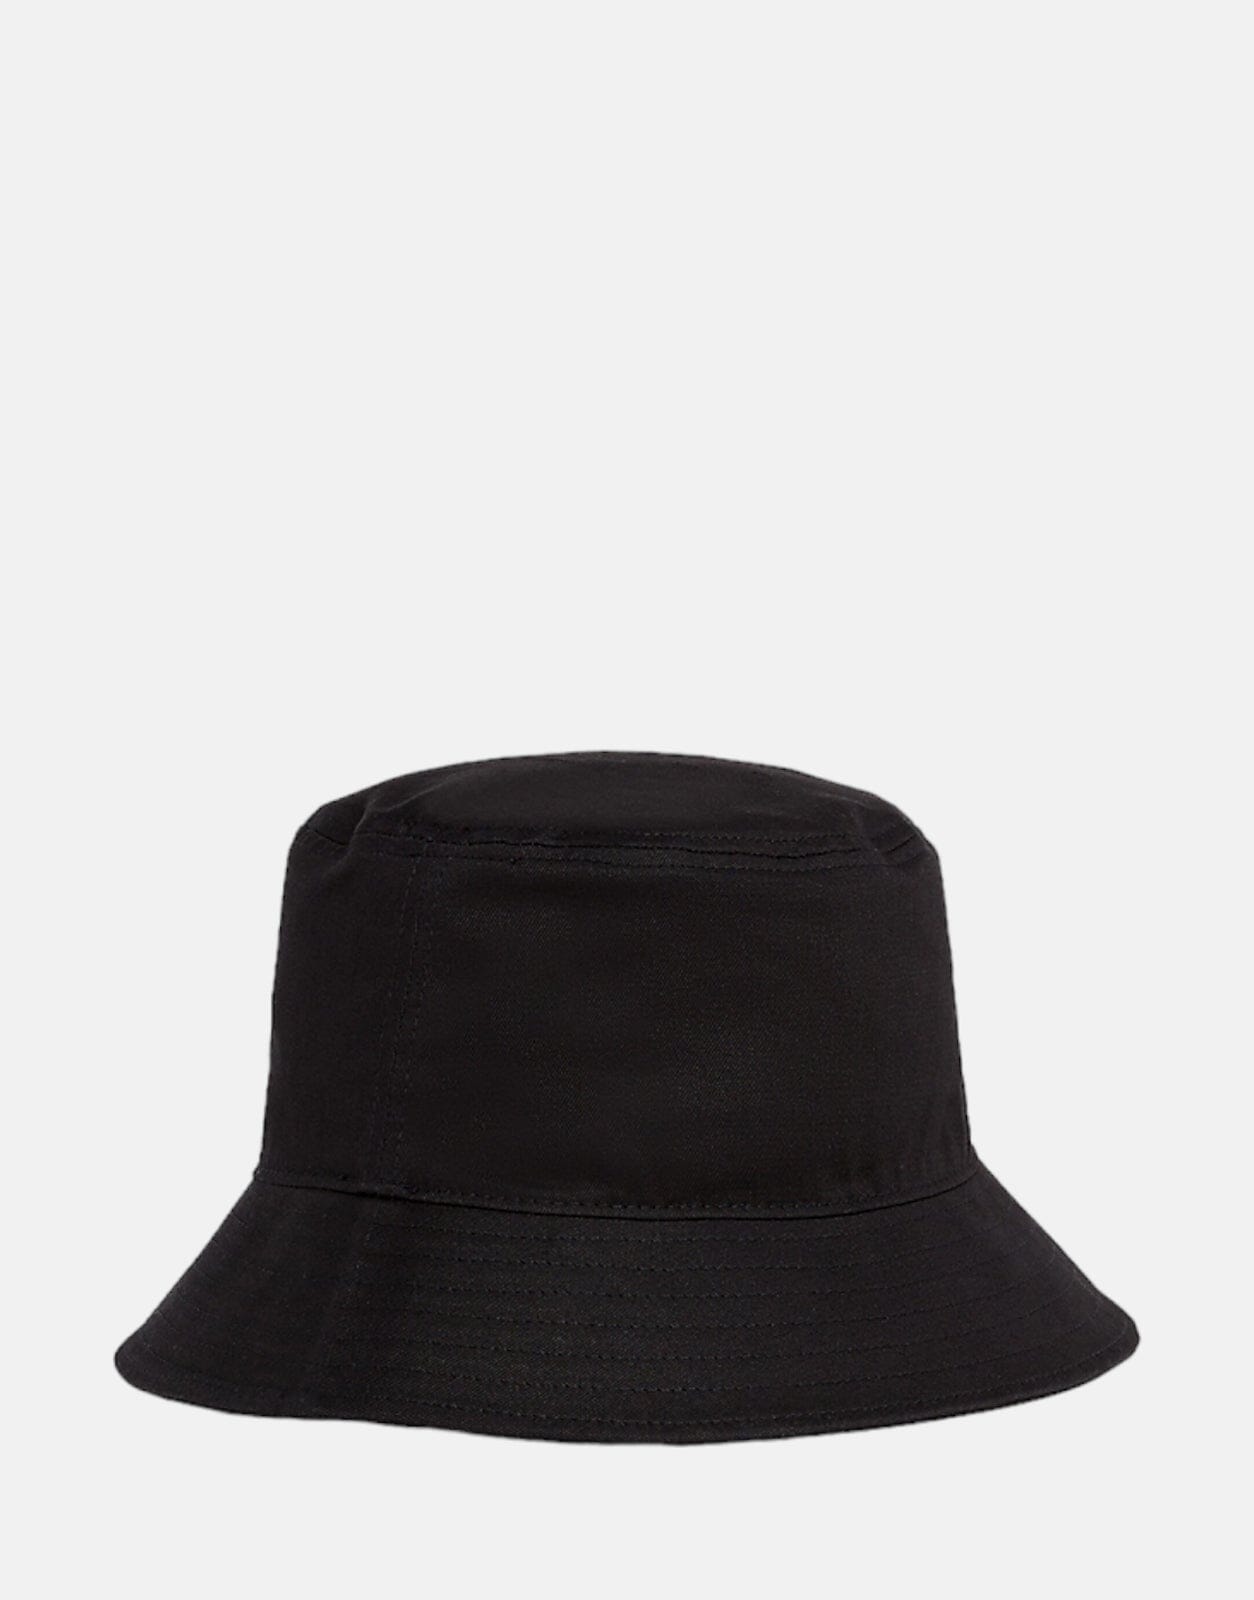 Calvin Klein Elevated Bucket Hat - Subwear